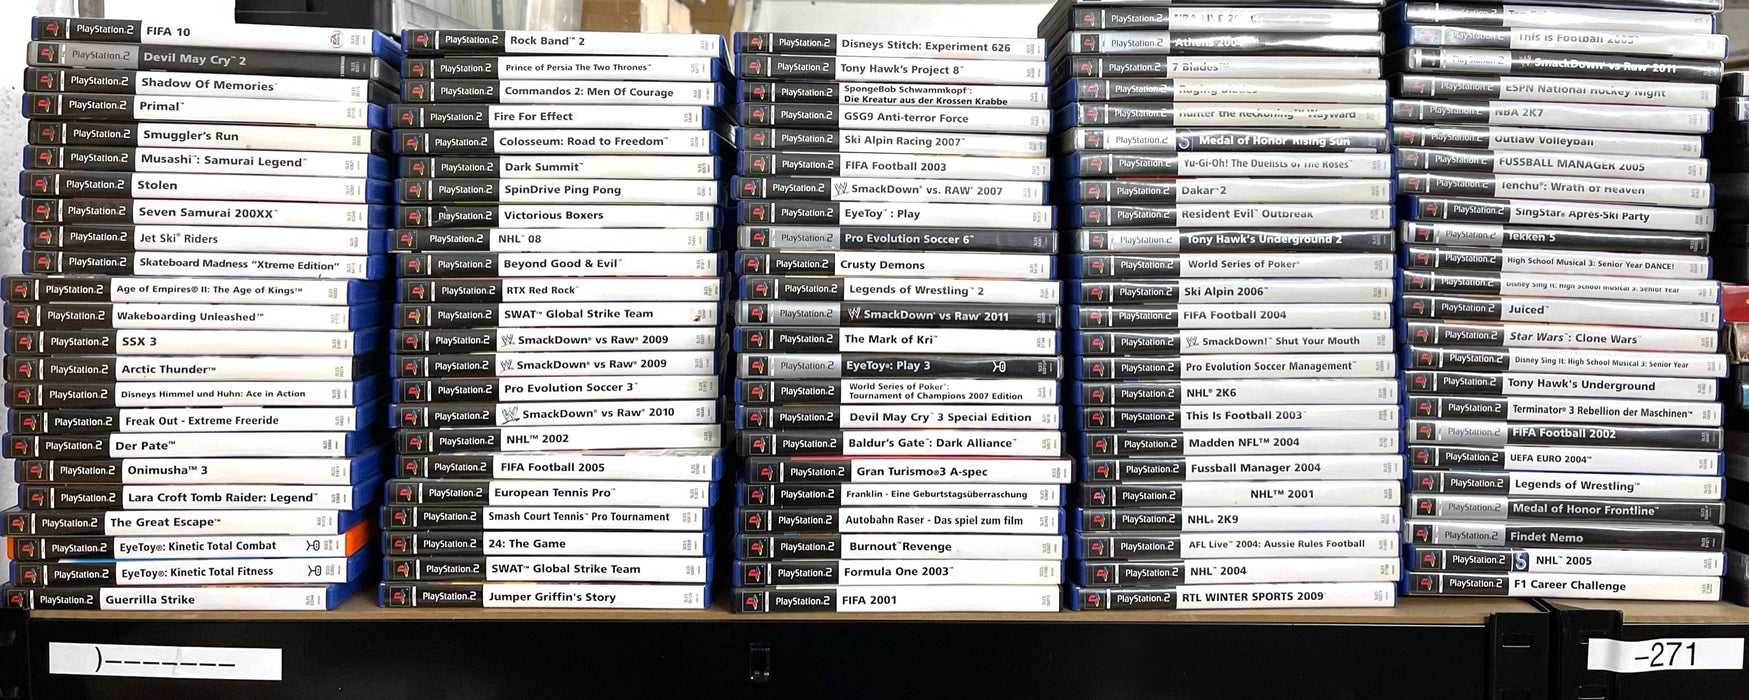 Glaciergames PlayStation 2 Game Gran Turismo 4 - Prologue PlayStation 2 (Nr.1214)